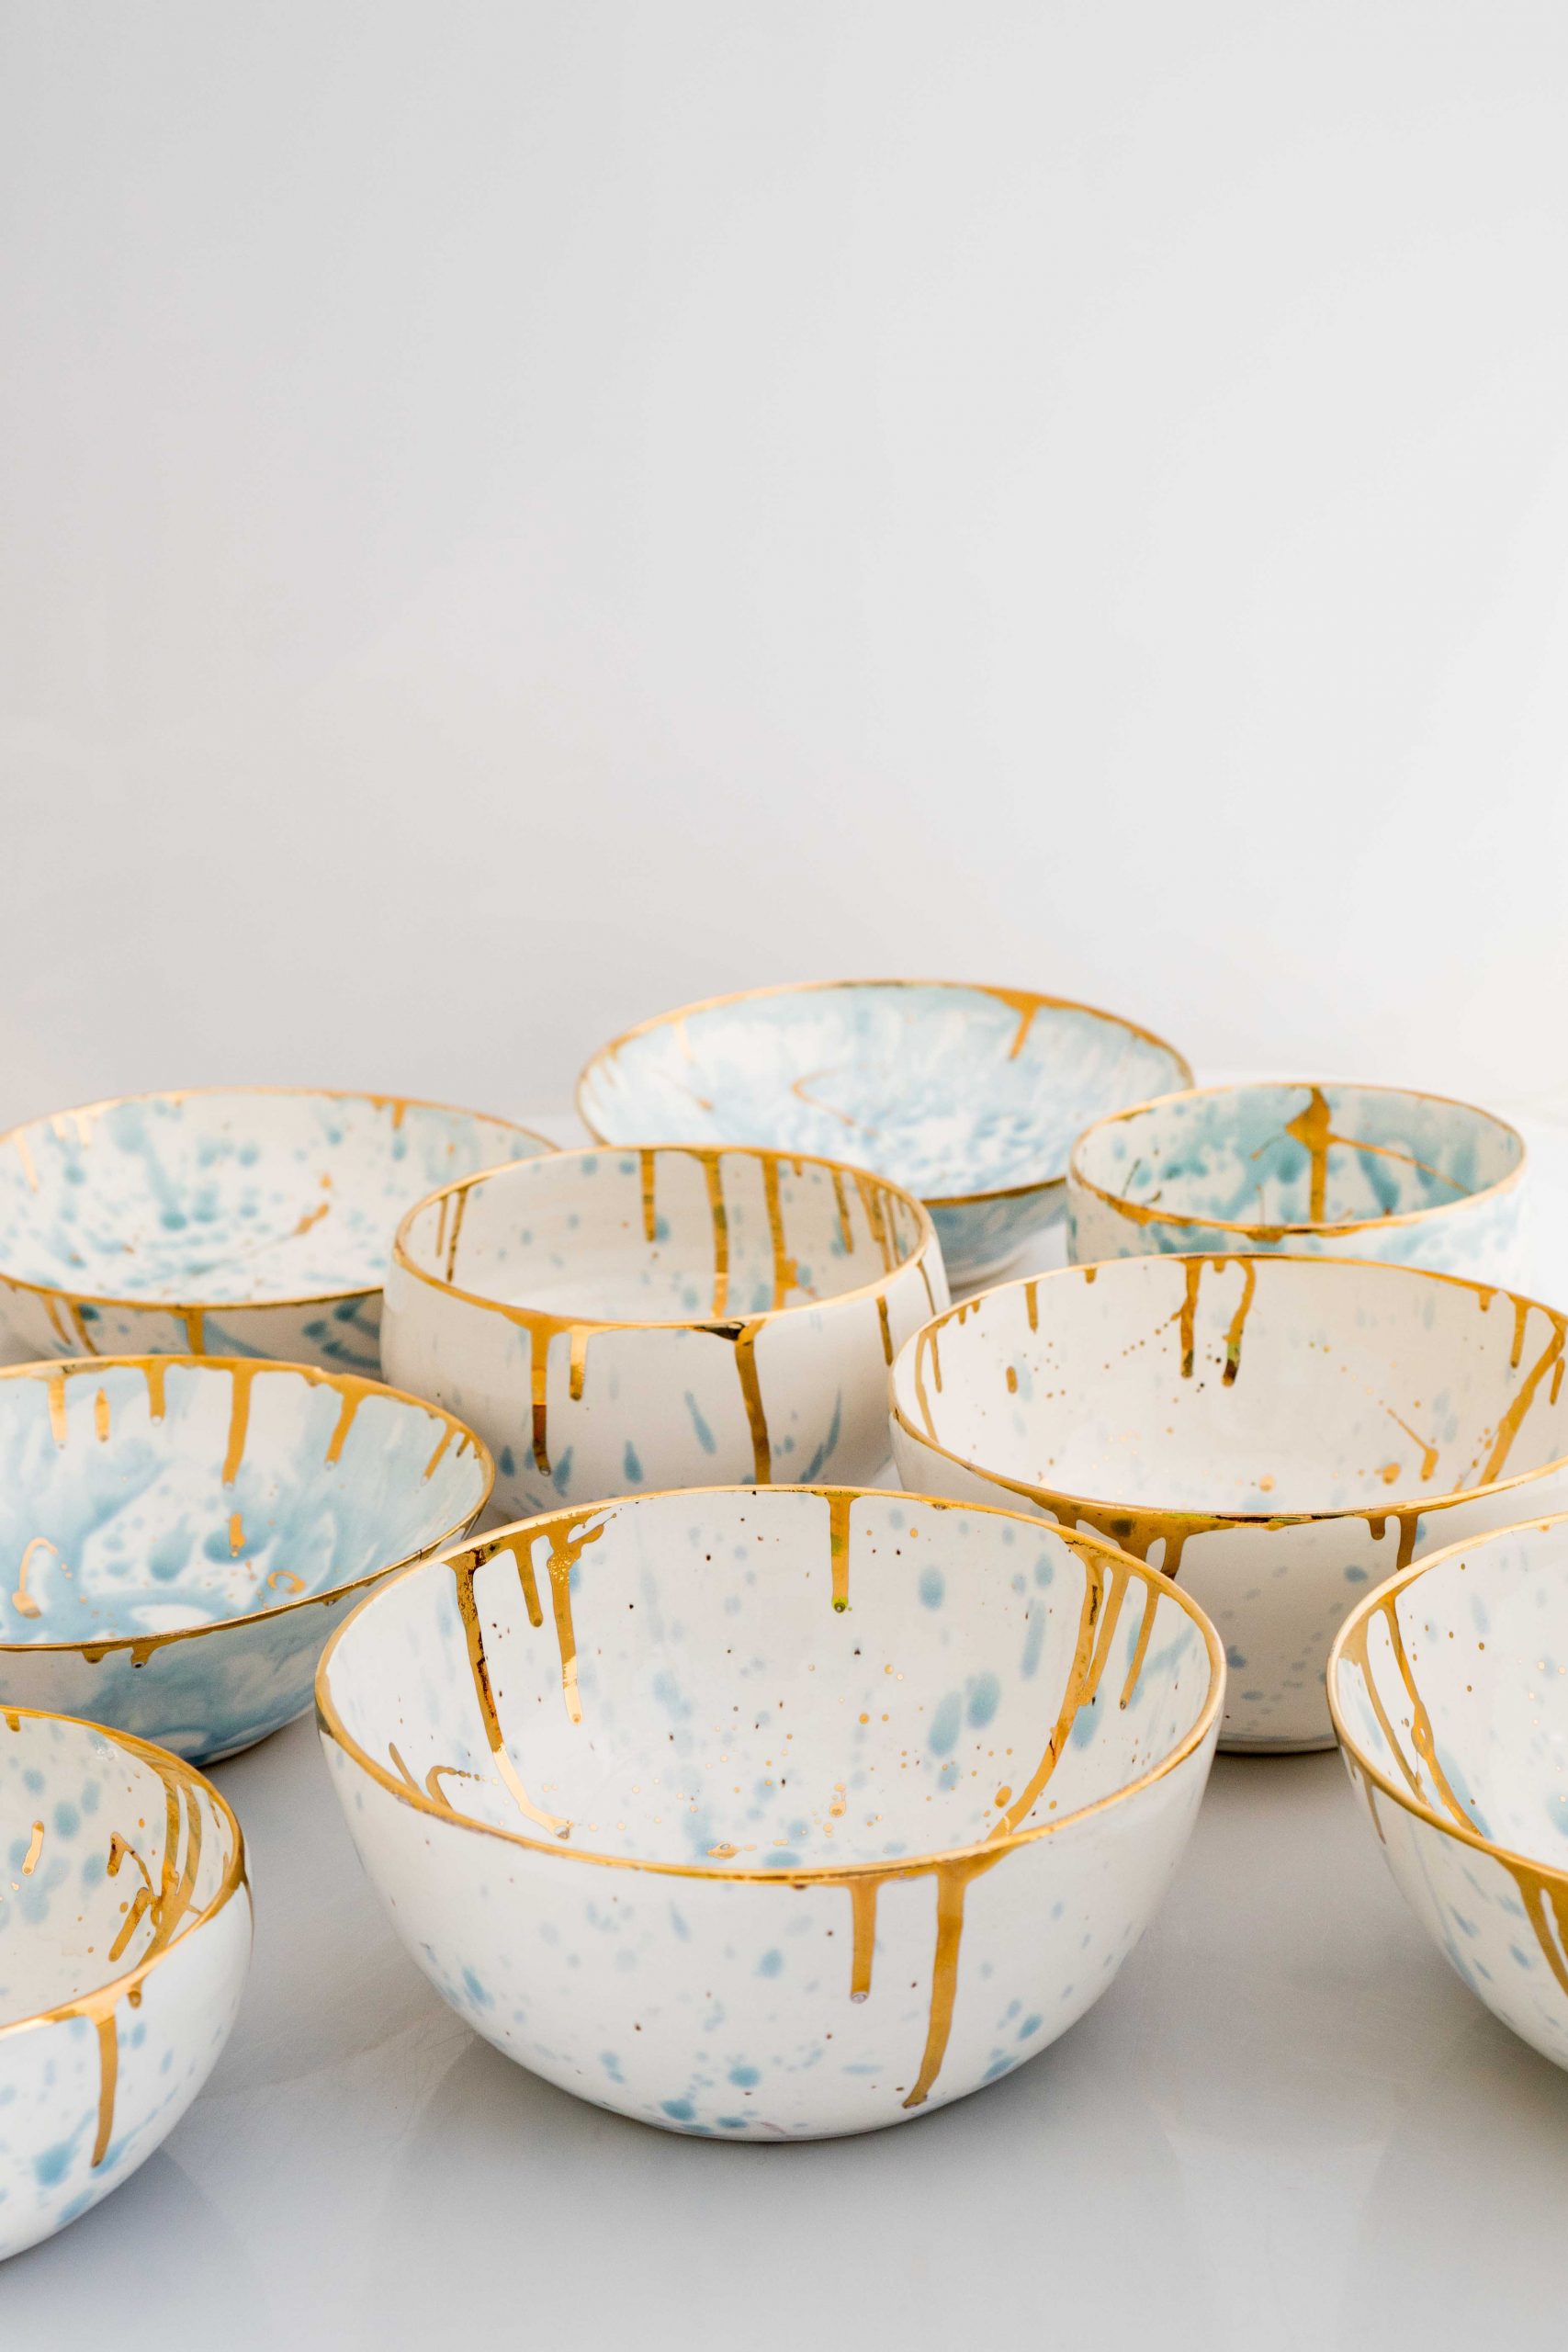 Set Ceramic Dinnerware - 9 pieces set